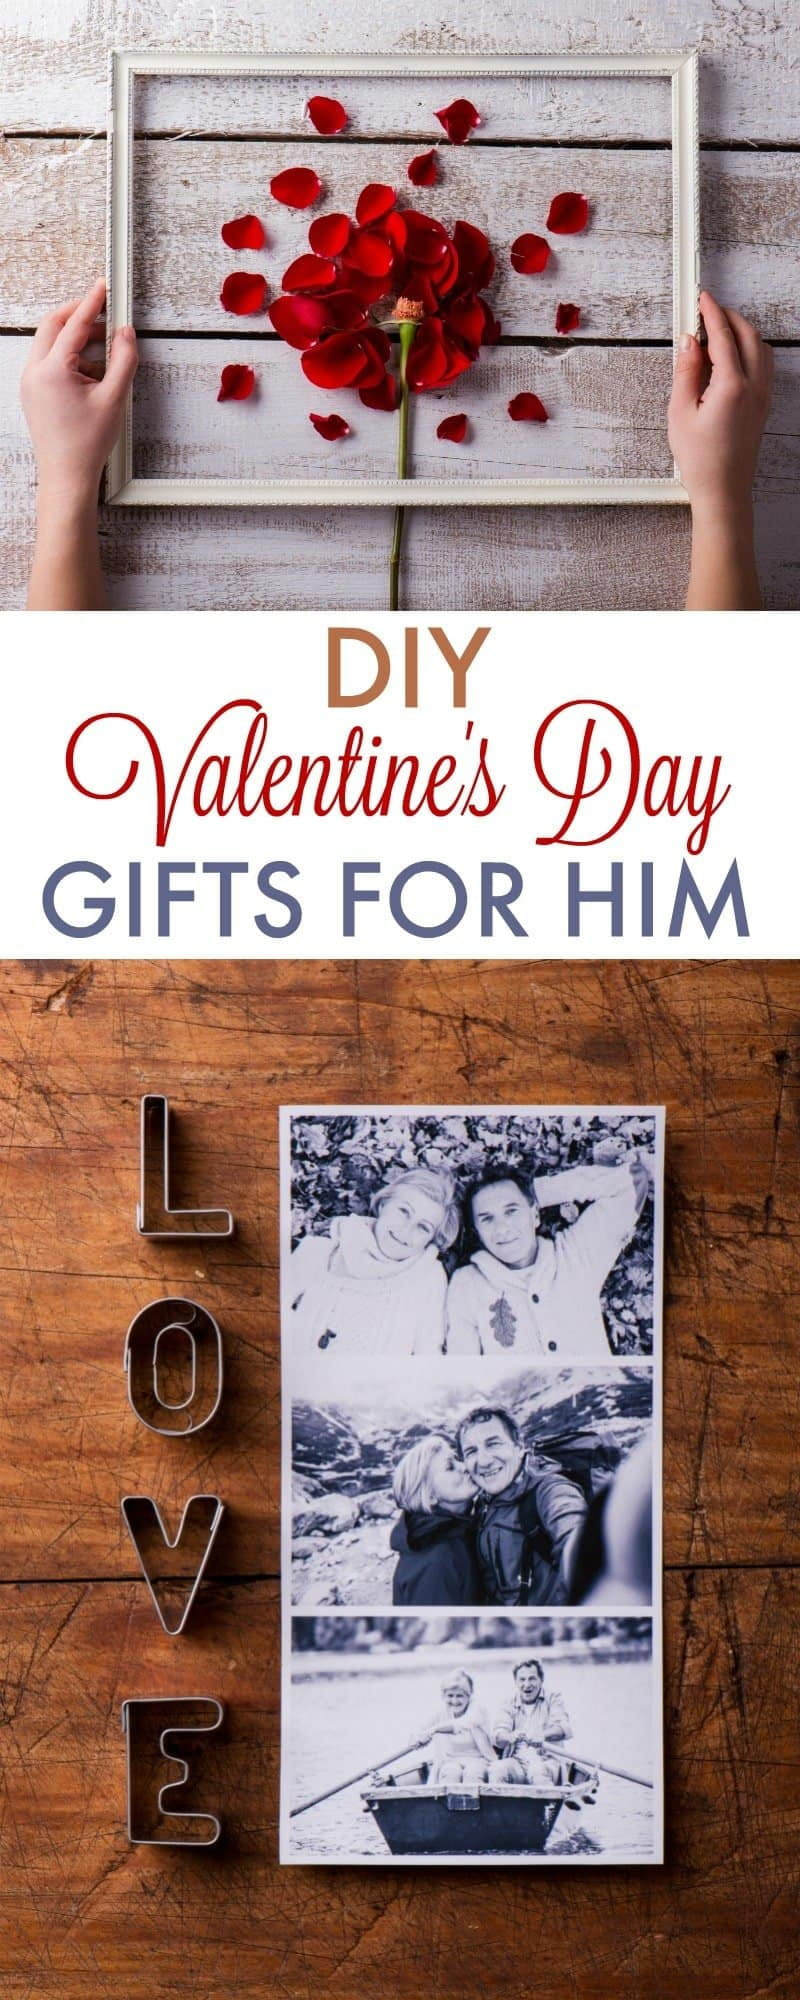 Gift Ideas For Your Boyfriend
 DIY Valentine s Day Gifts for Boyfriend 730 Sage Street